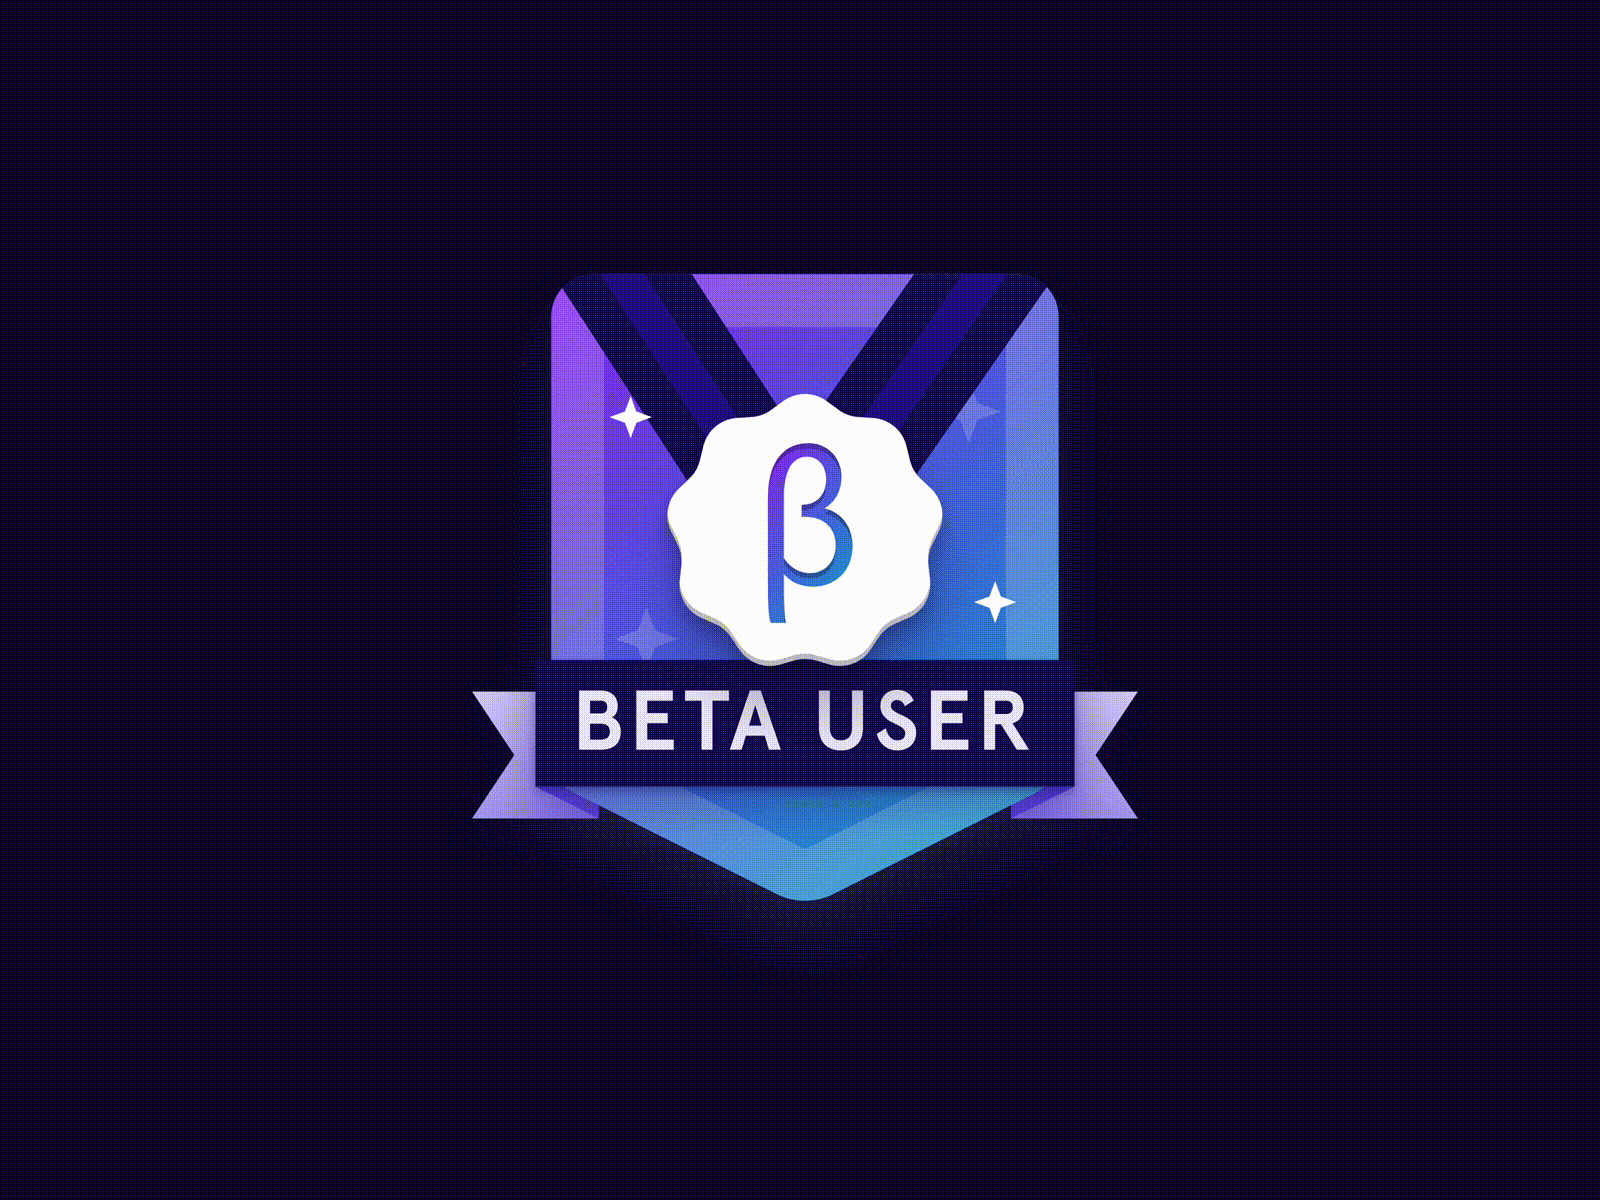 Beta user badge